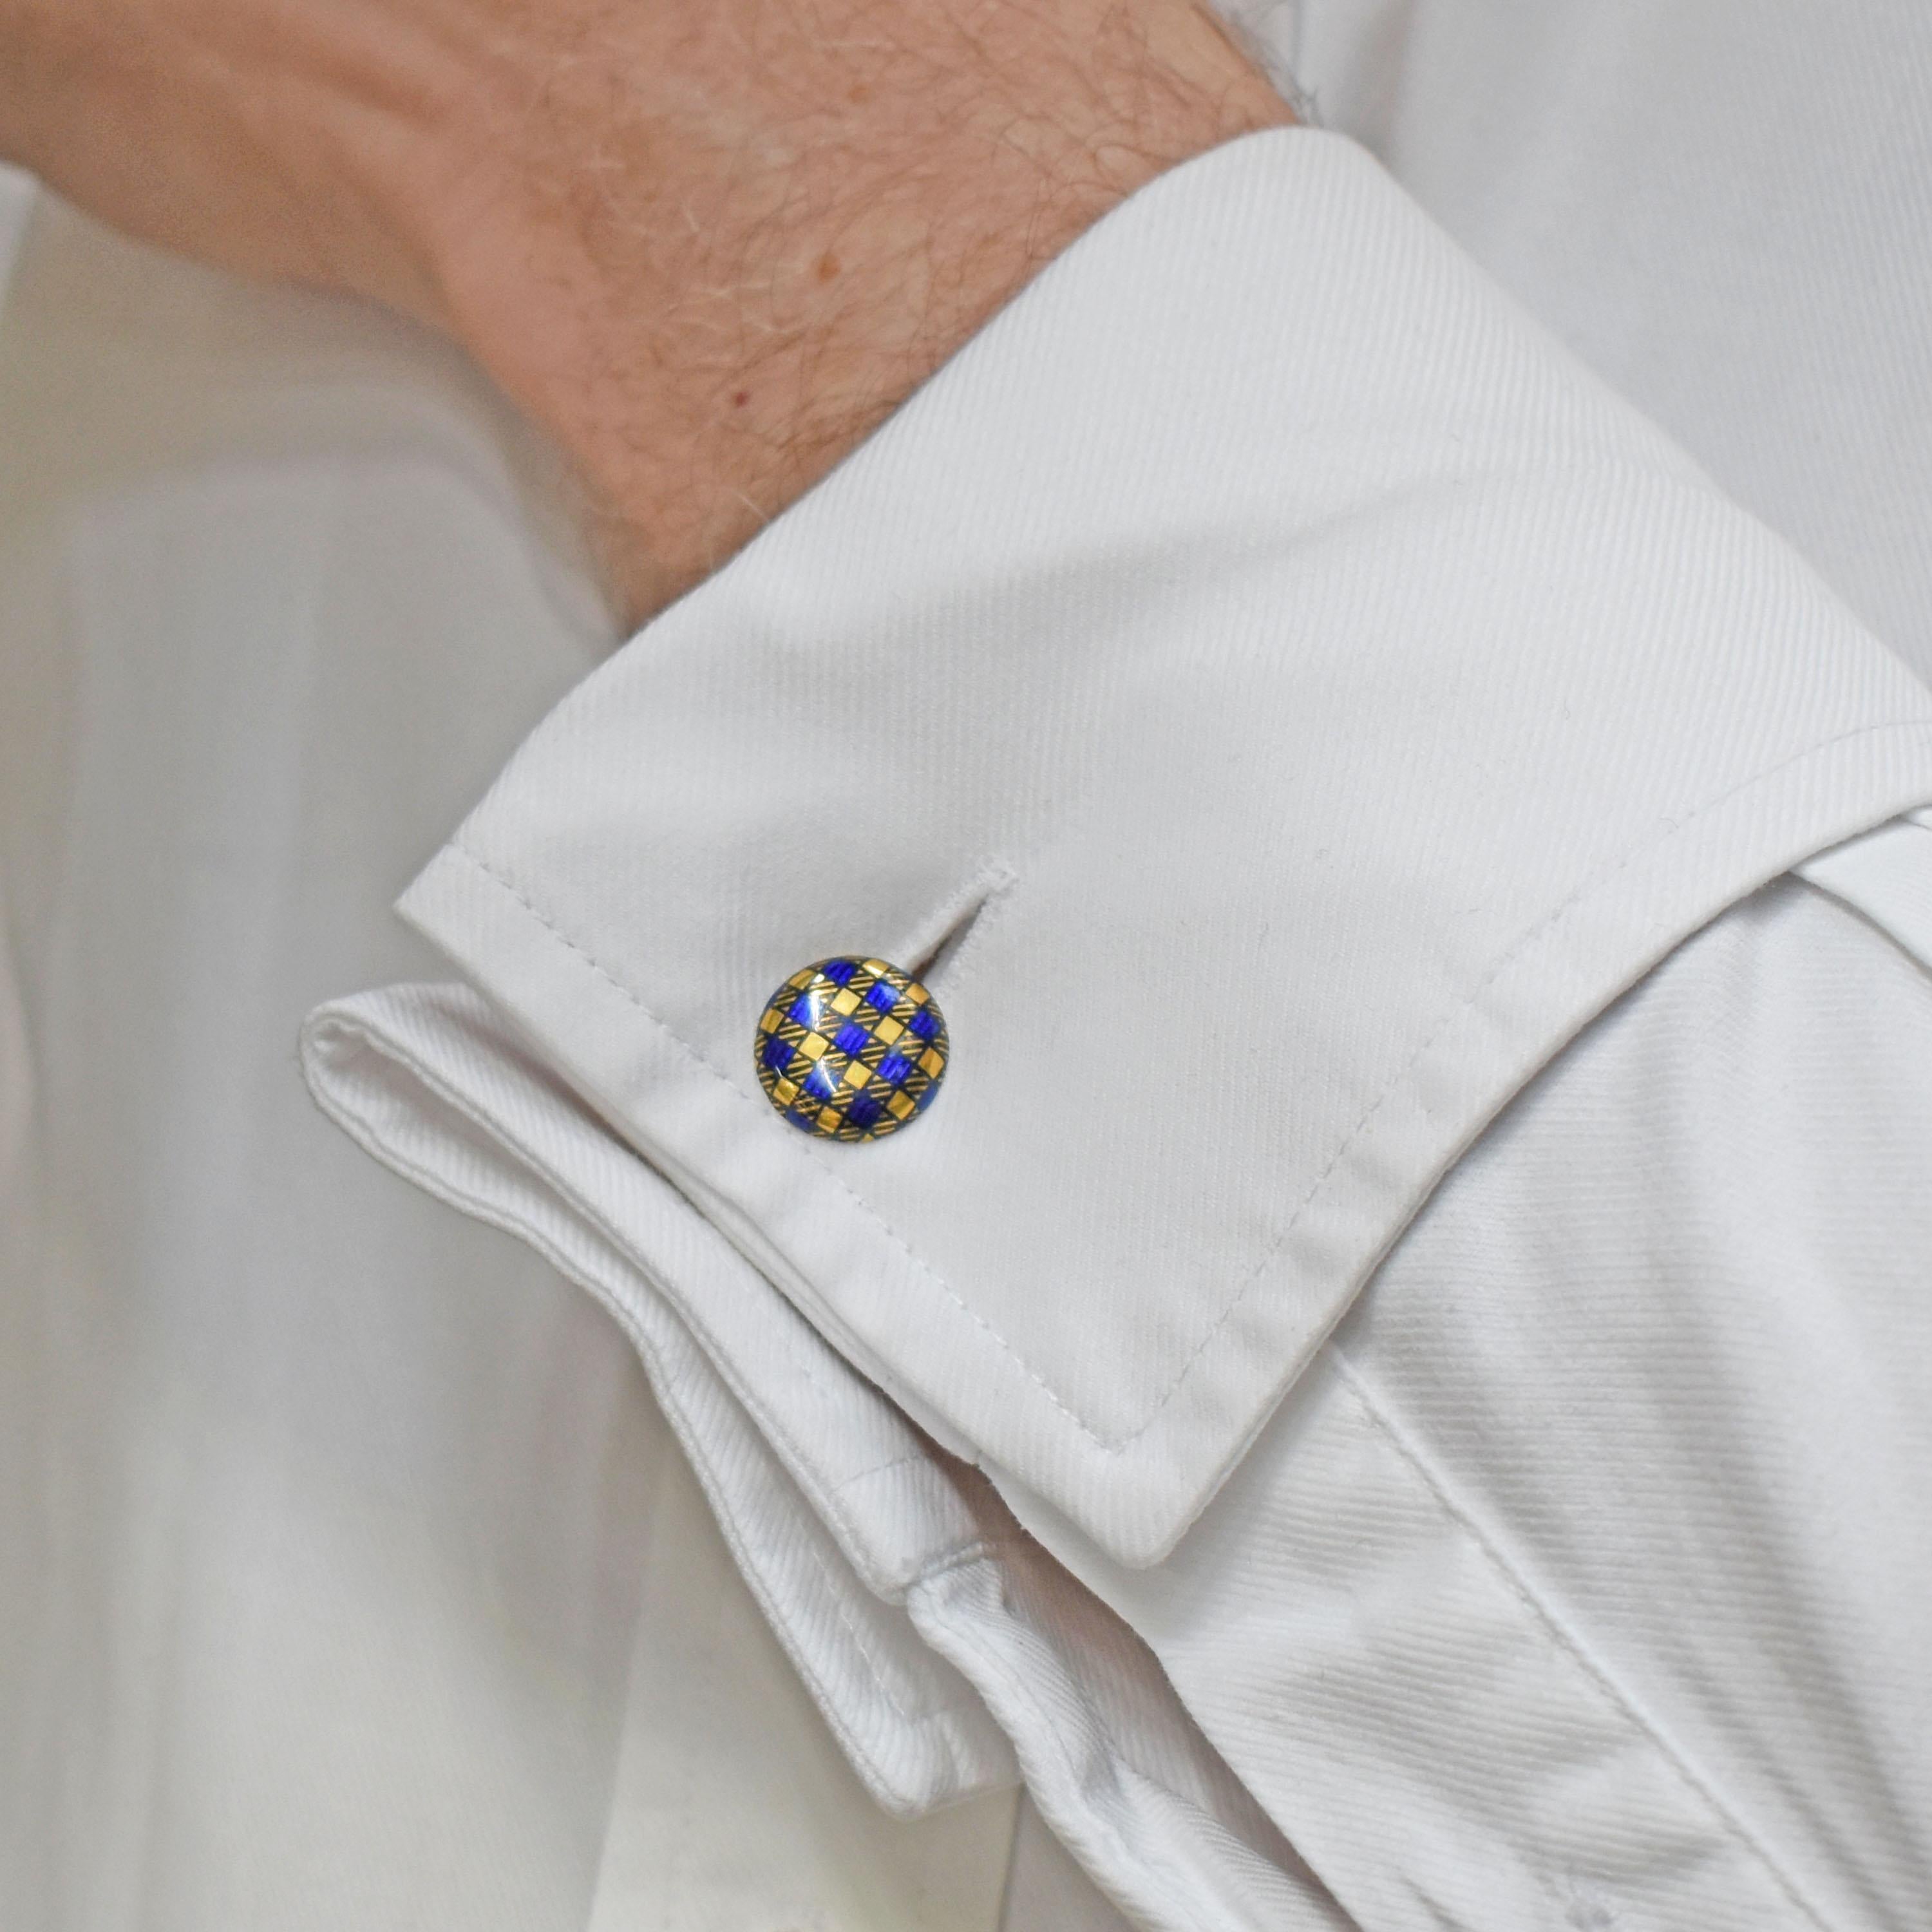 Vintage Tartan-Emaille-Kleidersatz, bestehend aus einem Paar Manschettenknöpfen, drei Knöpfen und einer Krawattennadel, gestaltet mit einem blauen Emaille-Muster, das Tartan darstellt, auf 14-karätigem Gold, mit Markierungen J.B., Mitte 20.

Die